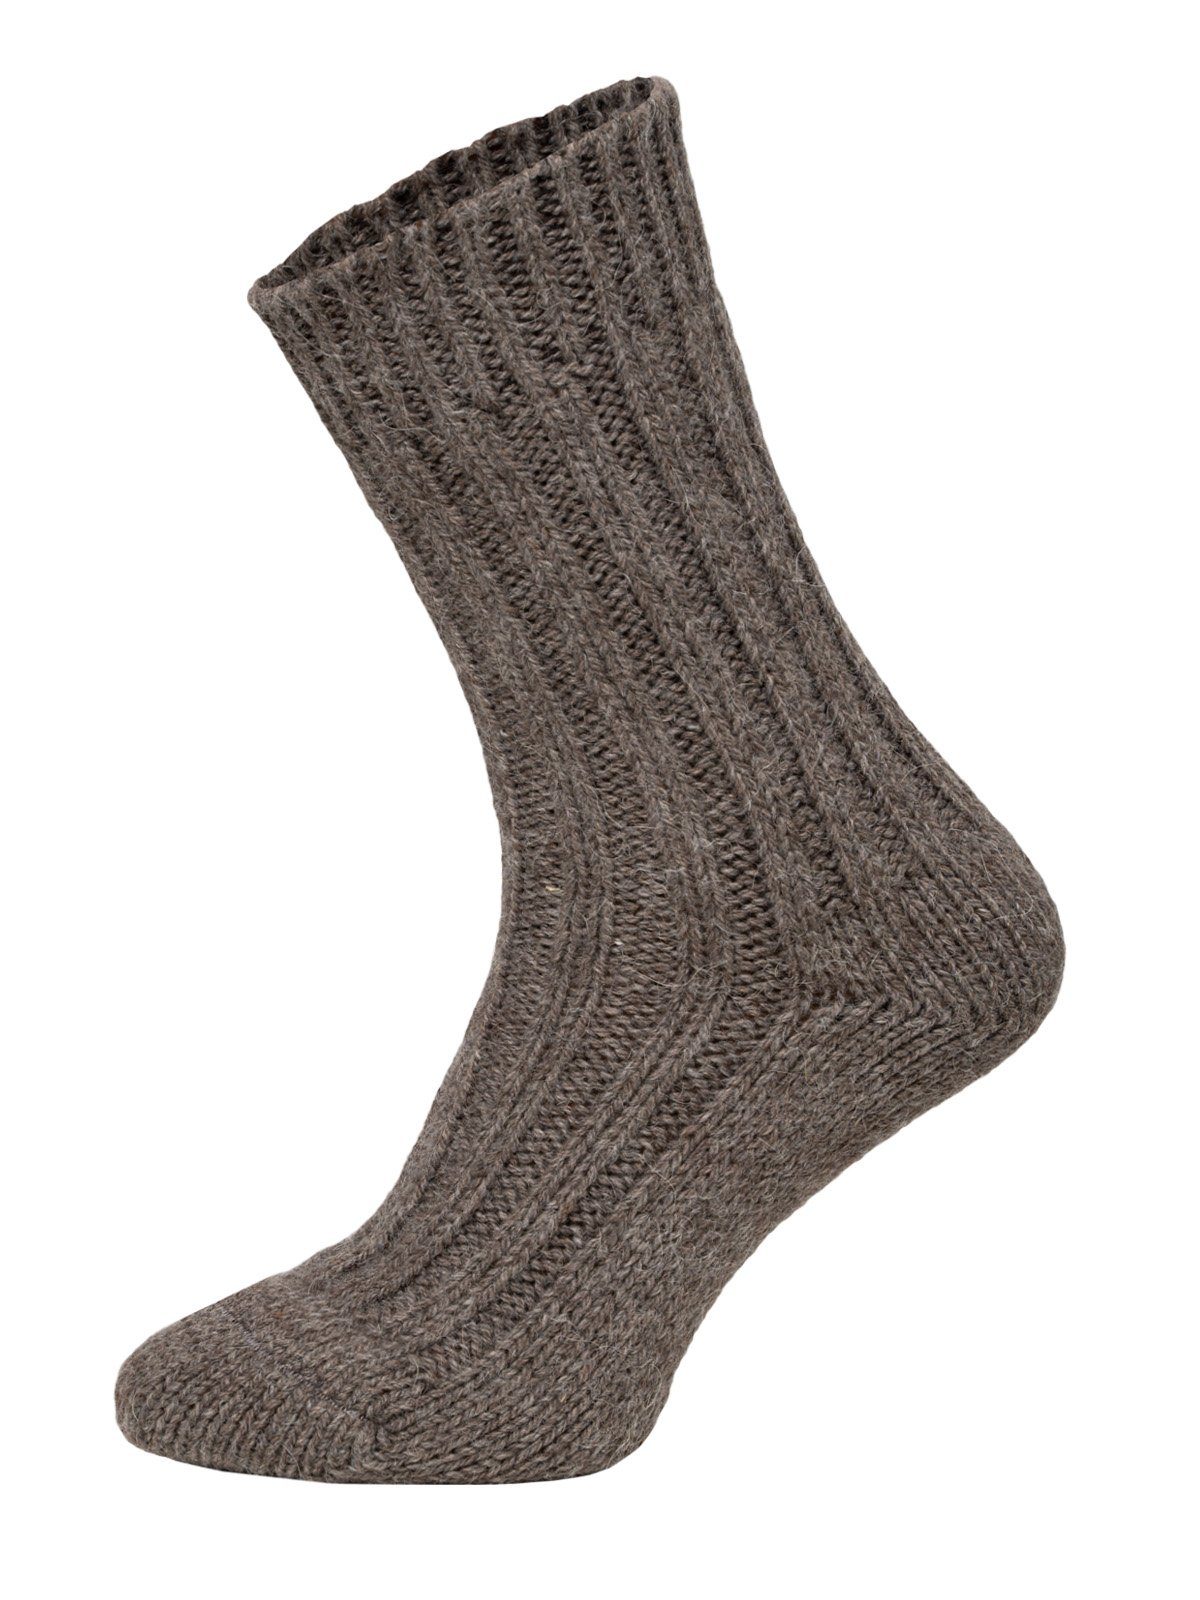 Meisterwerke & neue Werke! HomeOfSocks Socken Wollsocken mit warme und mit 50% Wollanteil Strapazierfähige Wollsocken Alpakawolle Alpakawolle und